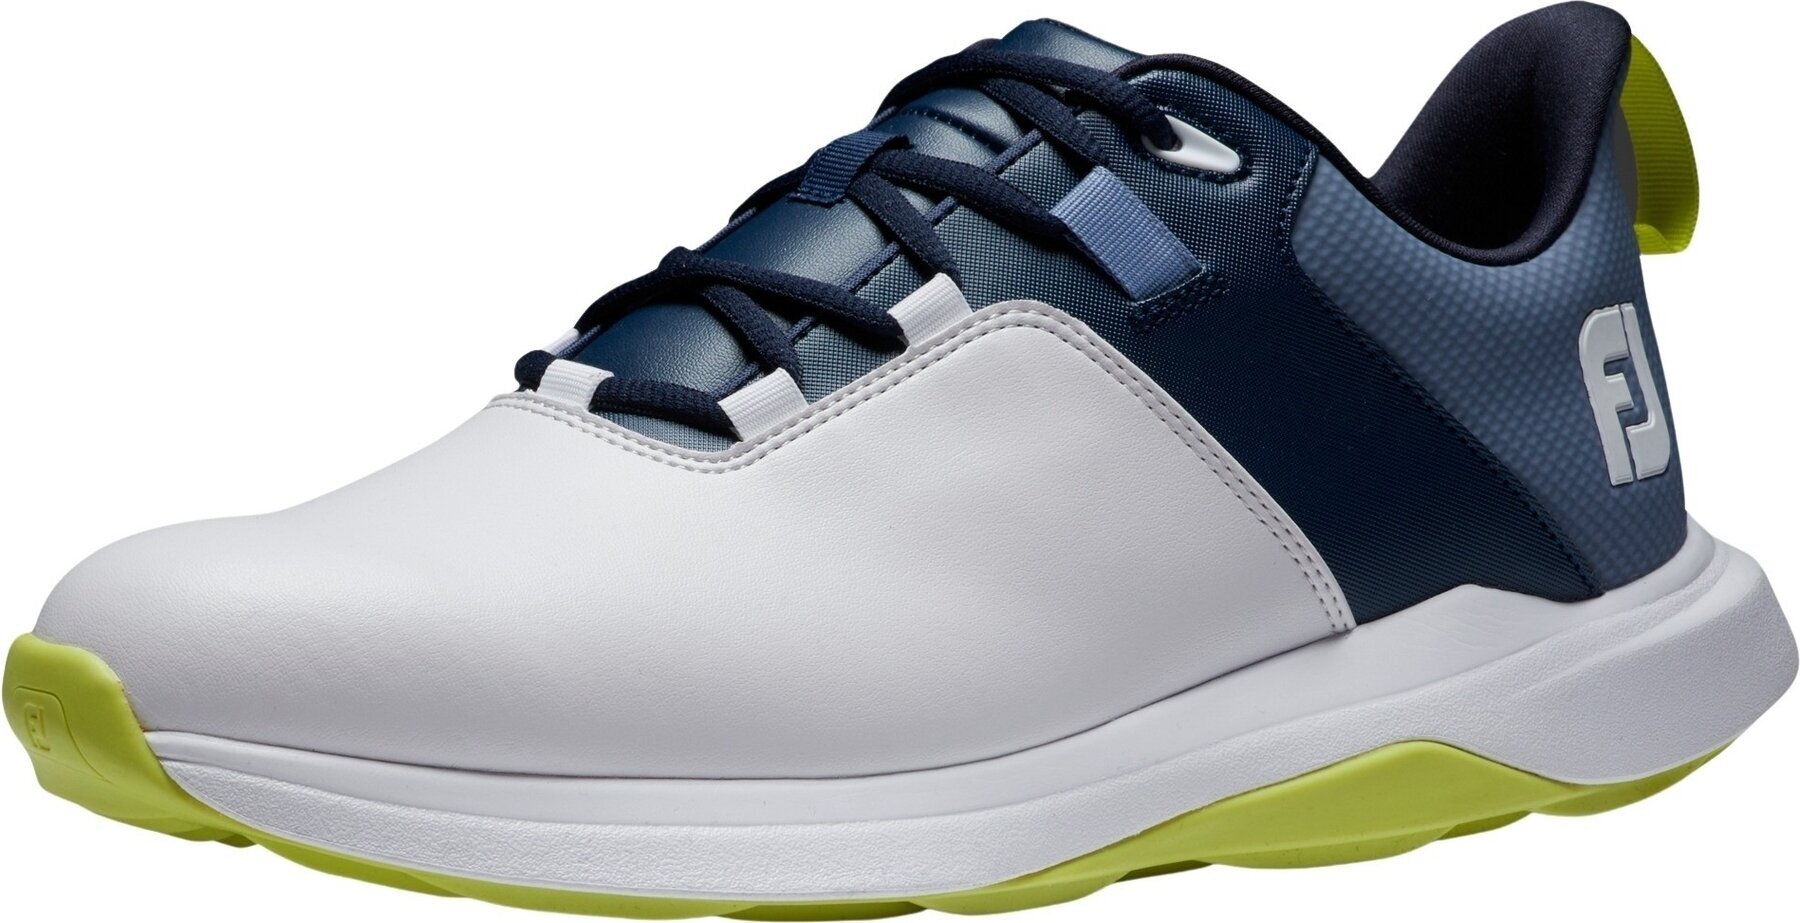 Calzado de golf para hombres Footjoy ProLite Mens Golf Shoes White/Navy/Lime 42,5 Calzado de golf para hombres